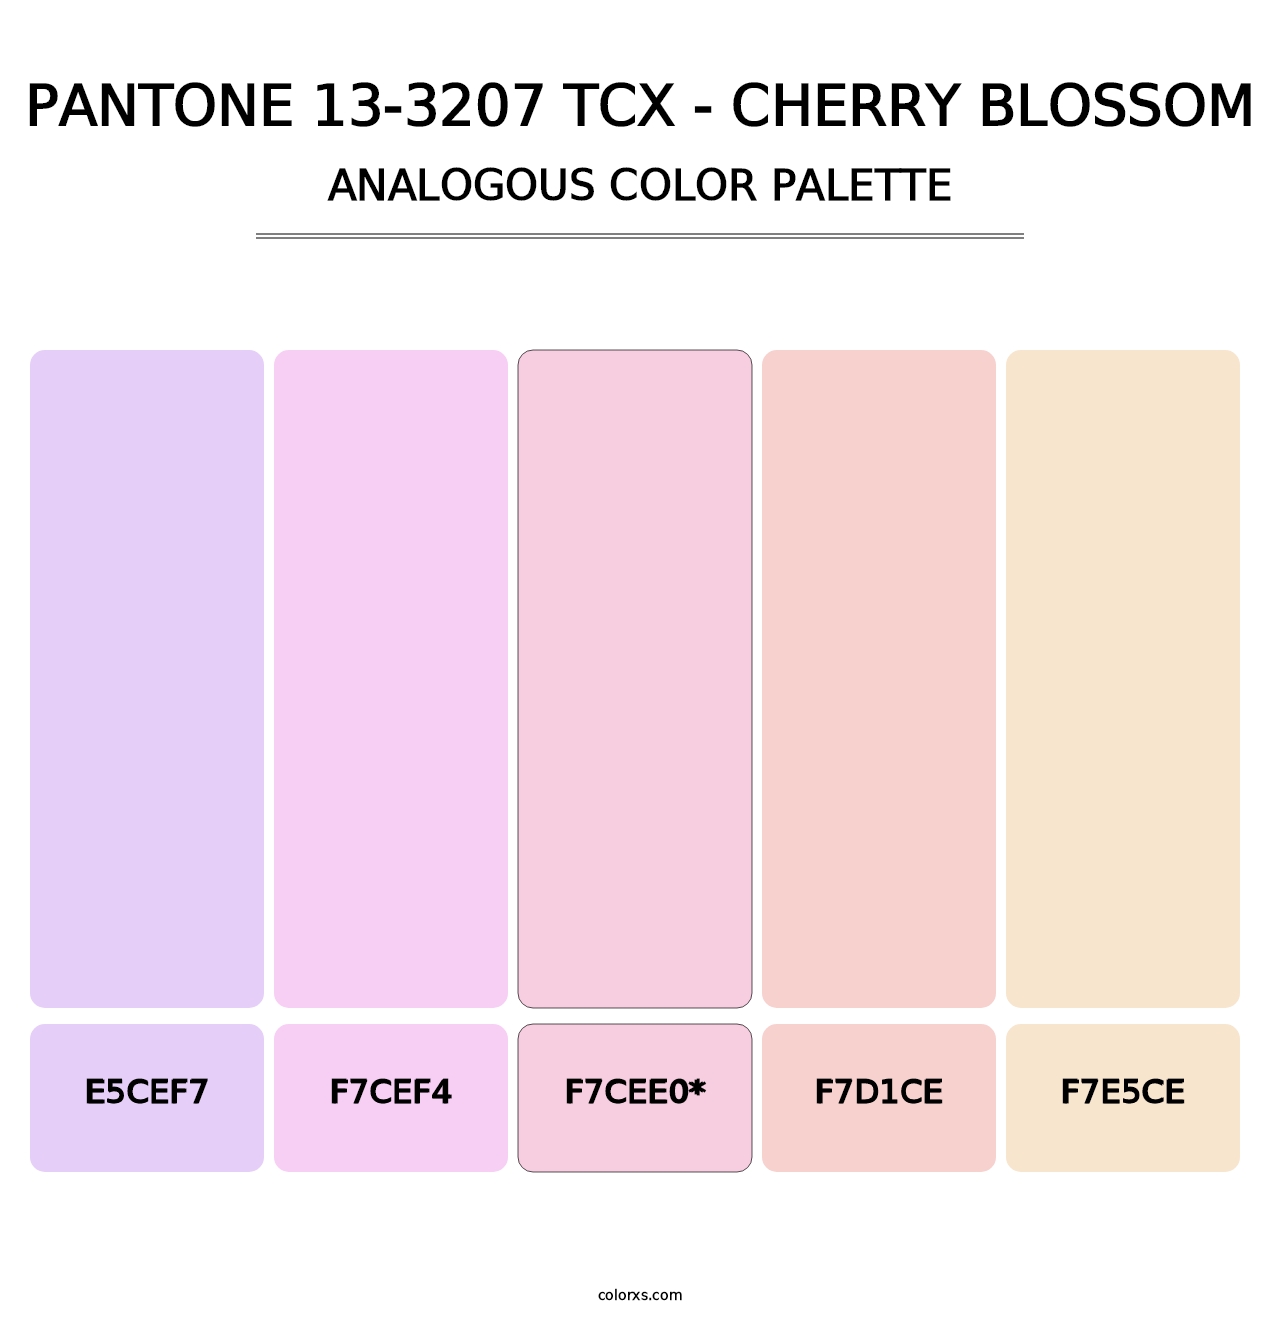 PANTONE 13-3207 TCX - Cherry Blossom - Analogous Color Palette